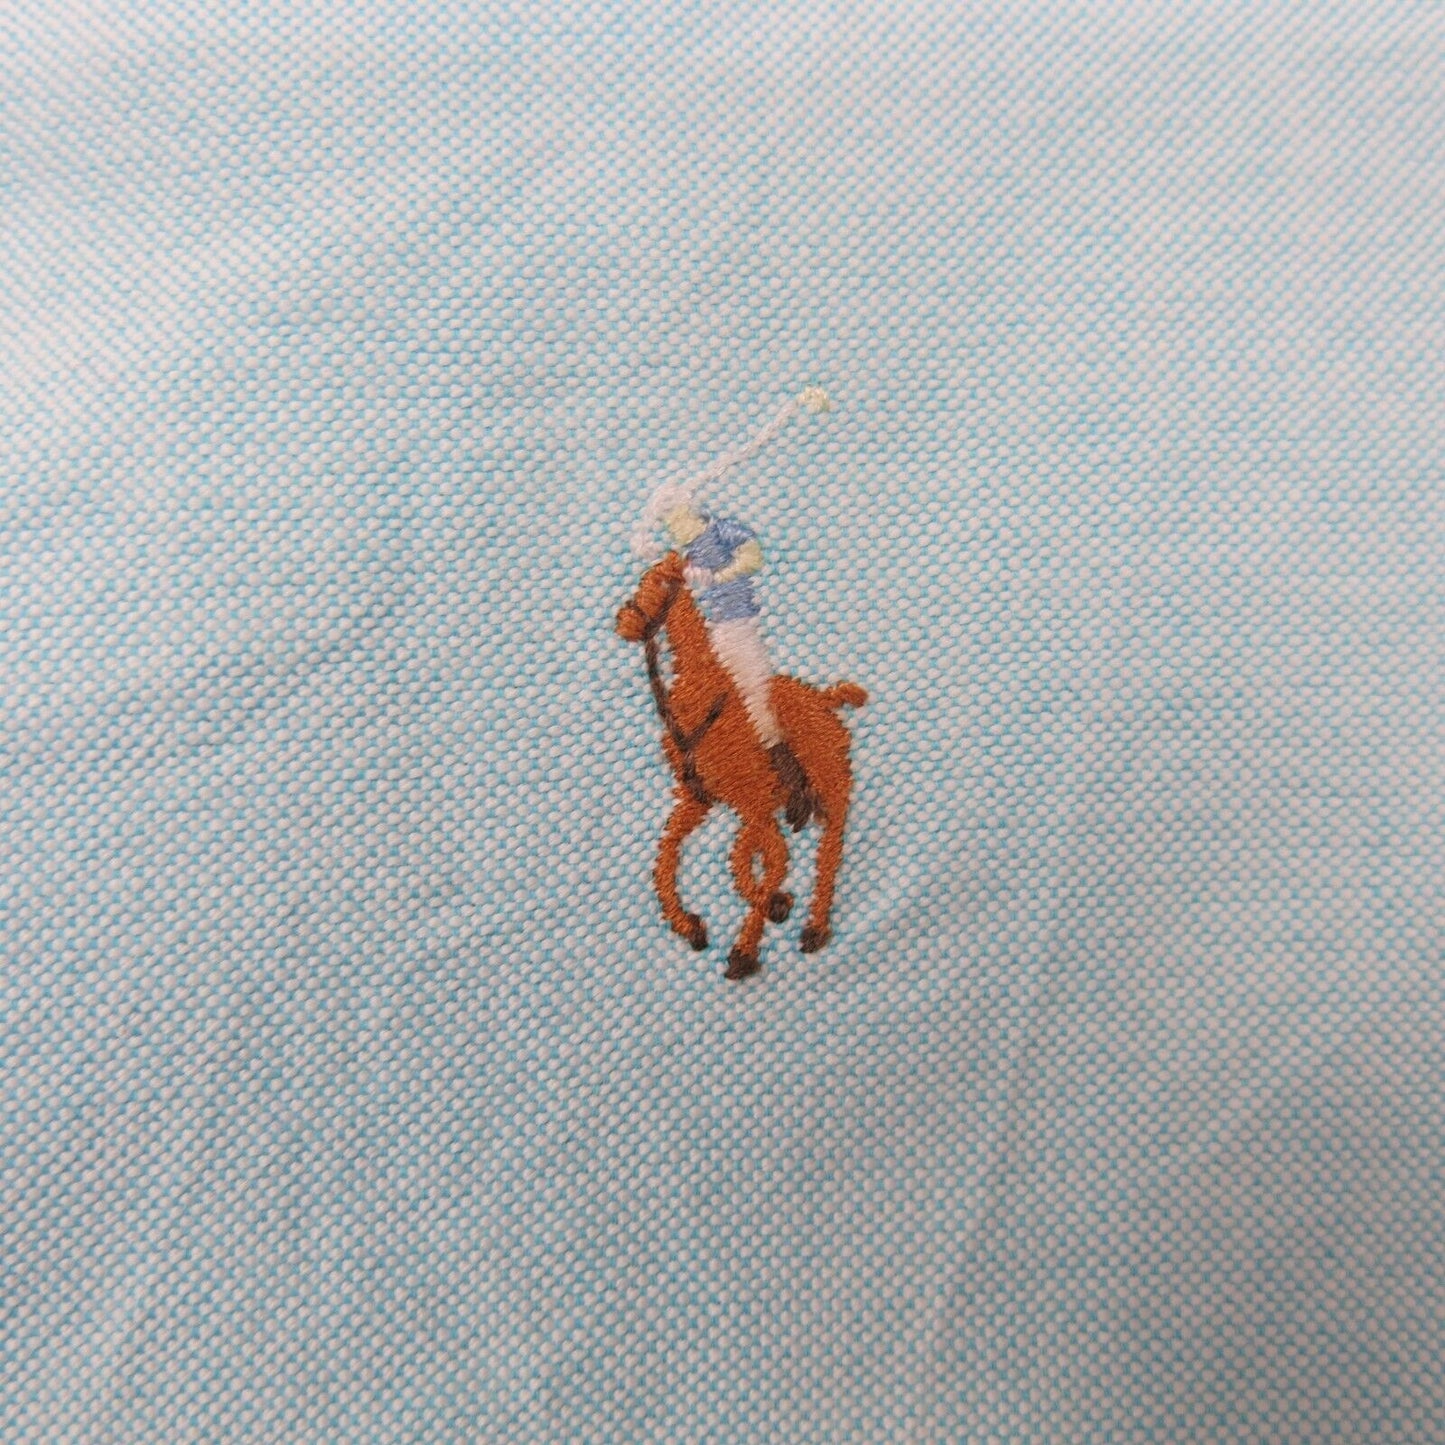 Ralph Lauren Mens Button Down Shirt Long Sleeve 100% Cotton Blue Size 17.5-34